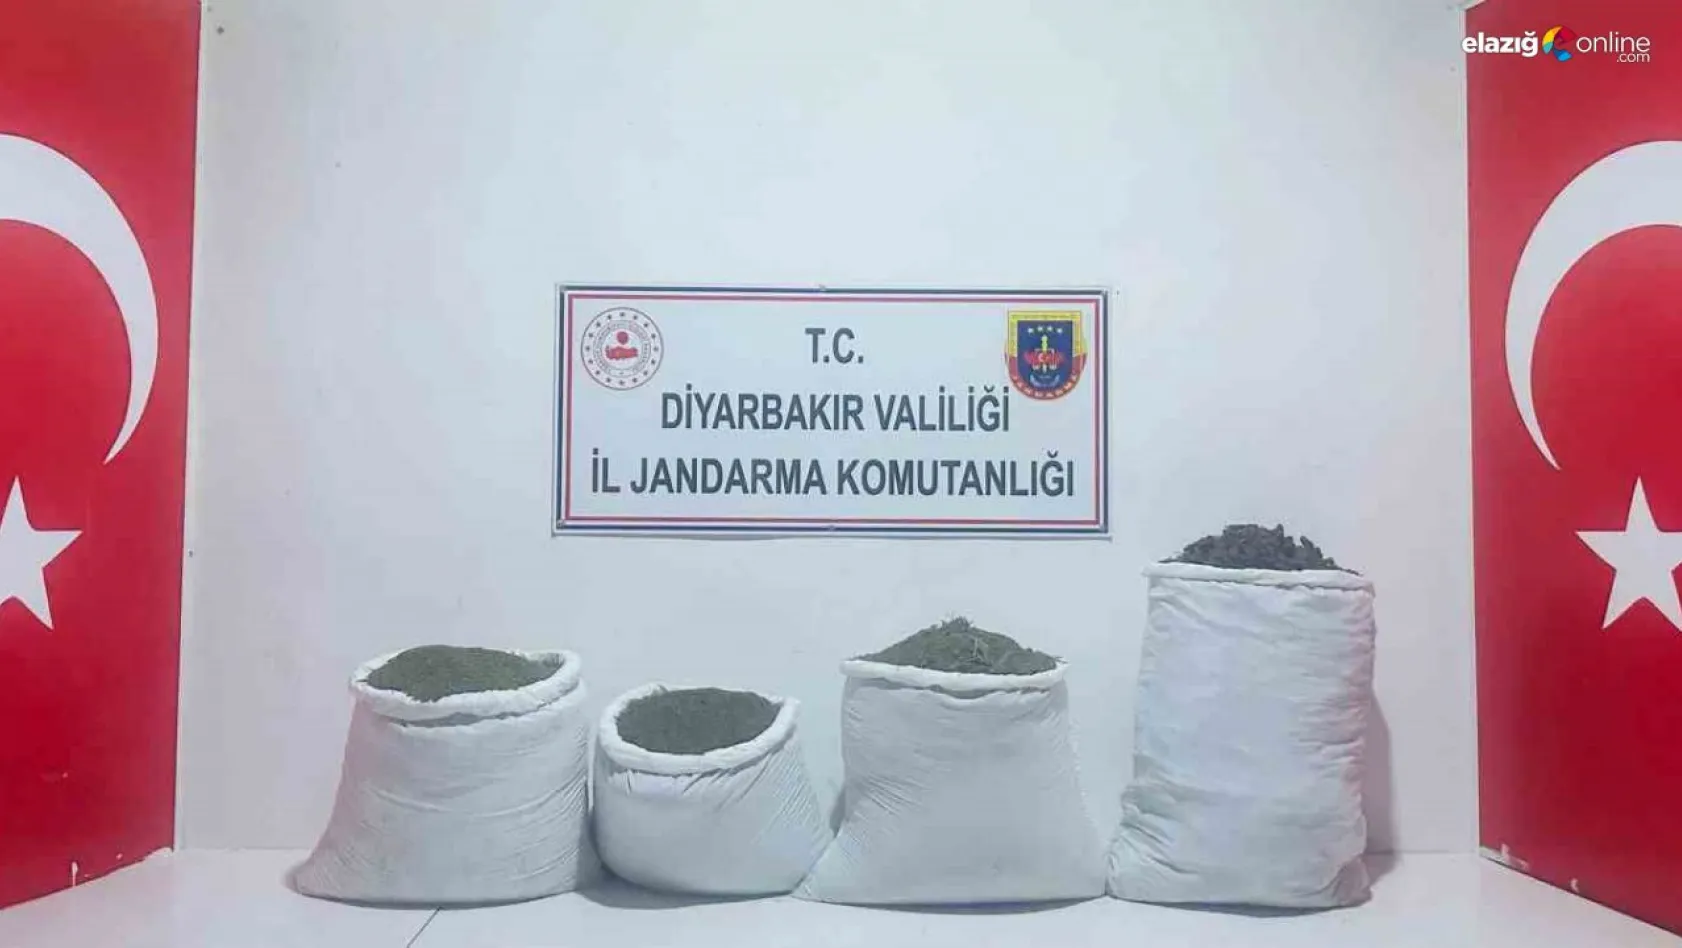 Diyarbakır'da 68 kilogram uyuşturucu ele geçirildi